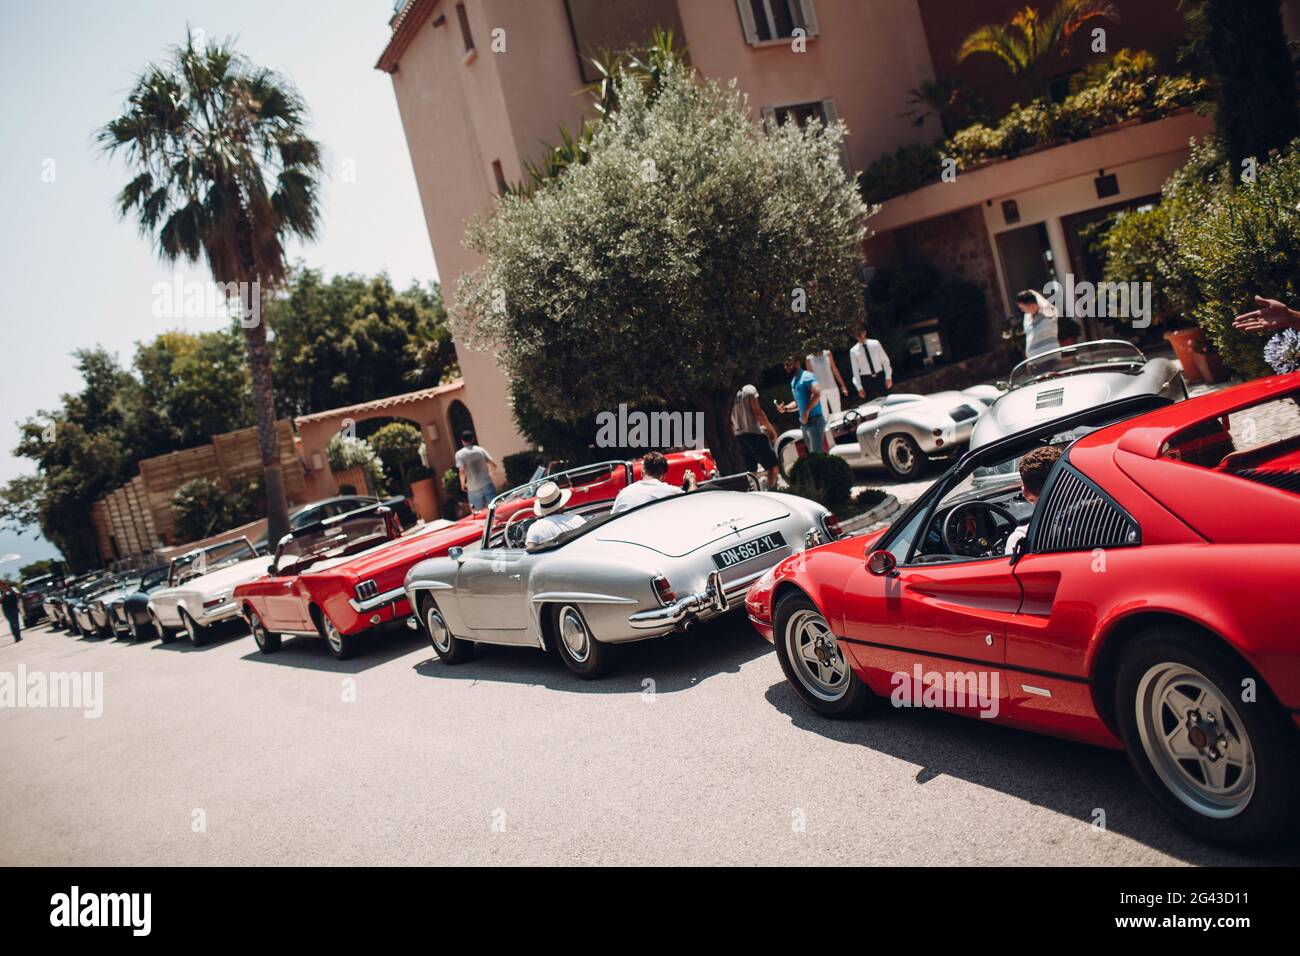 Rallye de voitures rétro. côte d'azur. Nice - Cannes - Saint-Tropez Banque D'Images